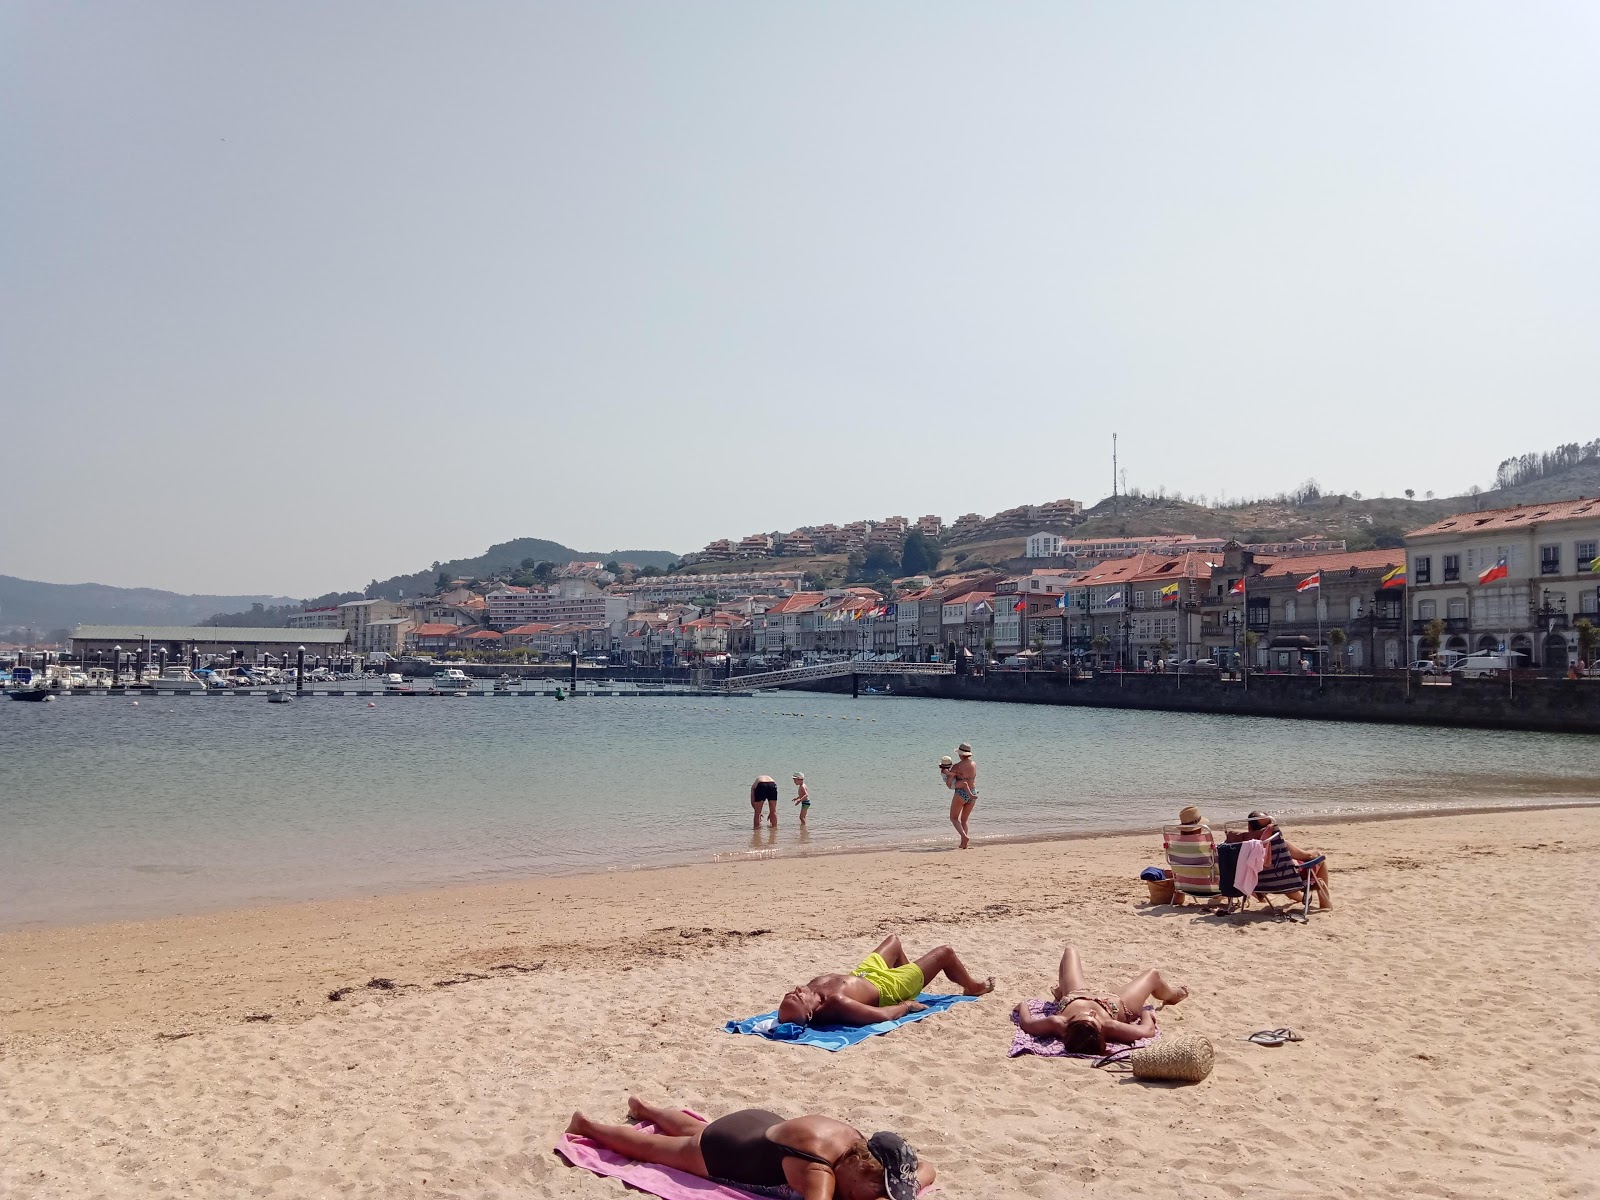 Praia da Ribeira'in fotoğrafı imkanlar alanı